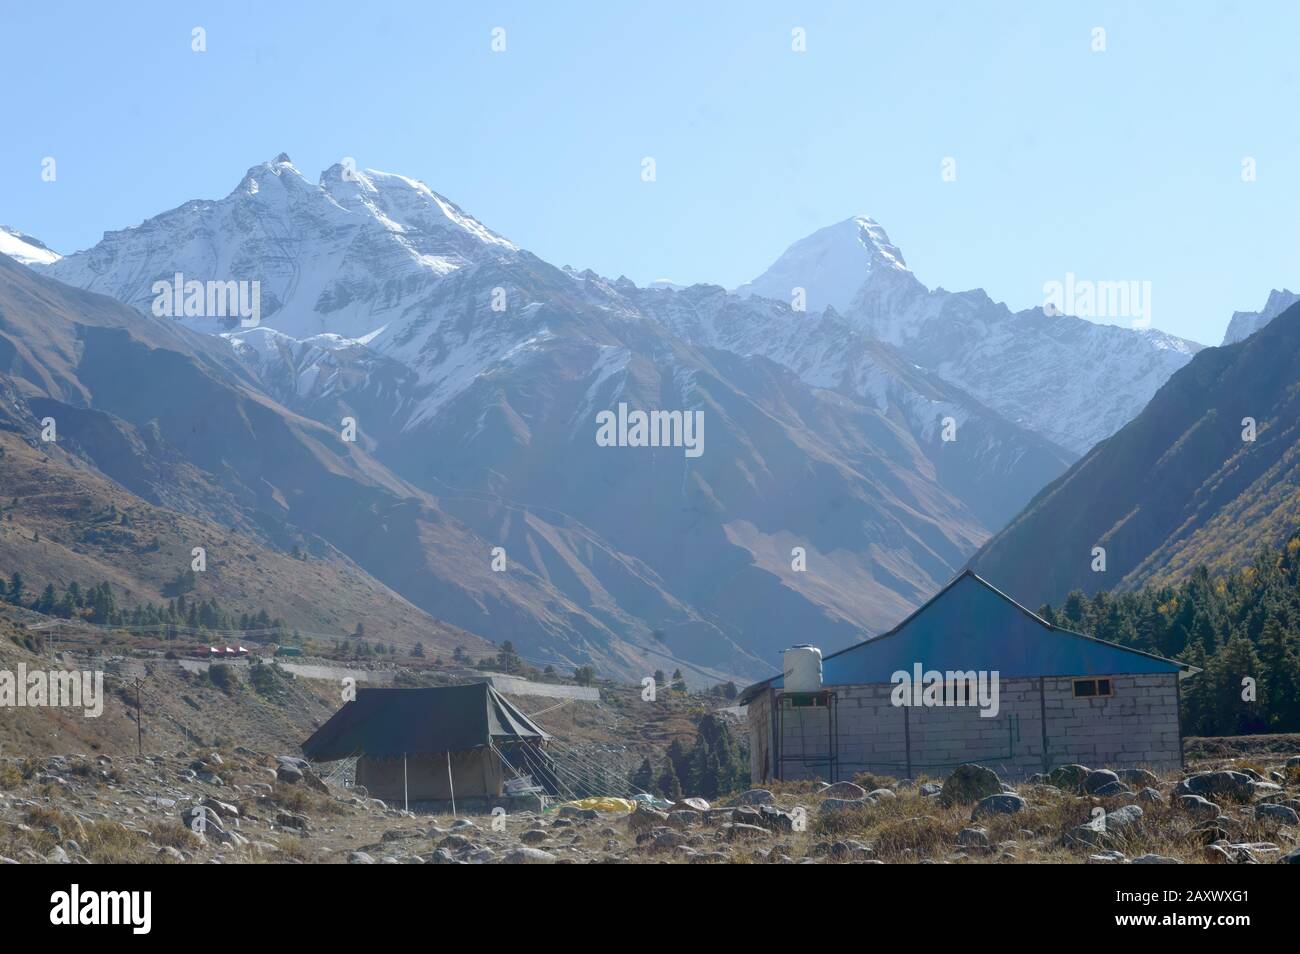 Chalet de montagne dans les montagnes de l'Himalaya, situé pour fournir un abri aux alpinistes, aux alpinistes et aux randonneurs. Chevauchement d'interverrouillage Banque D'Images